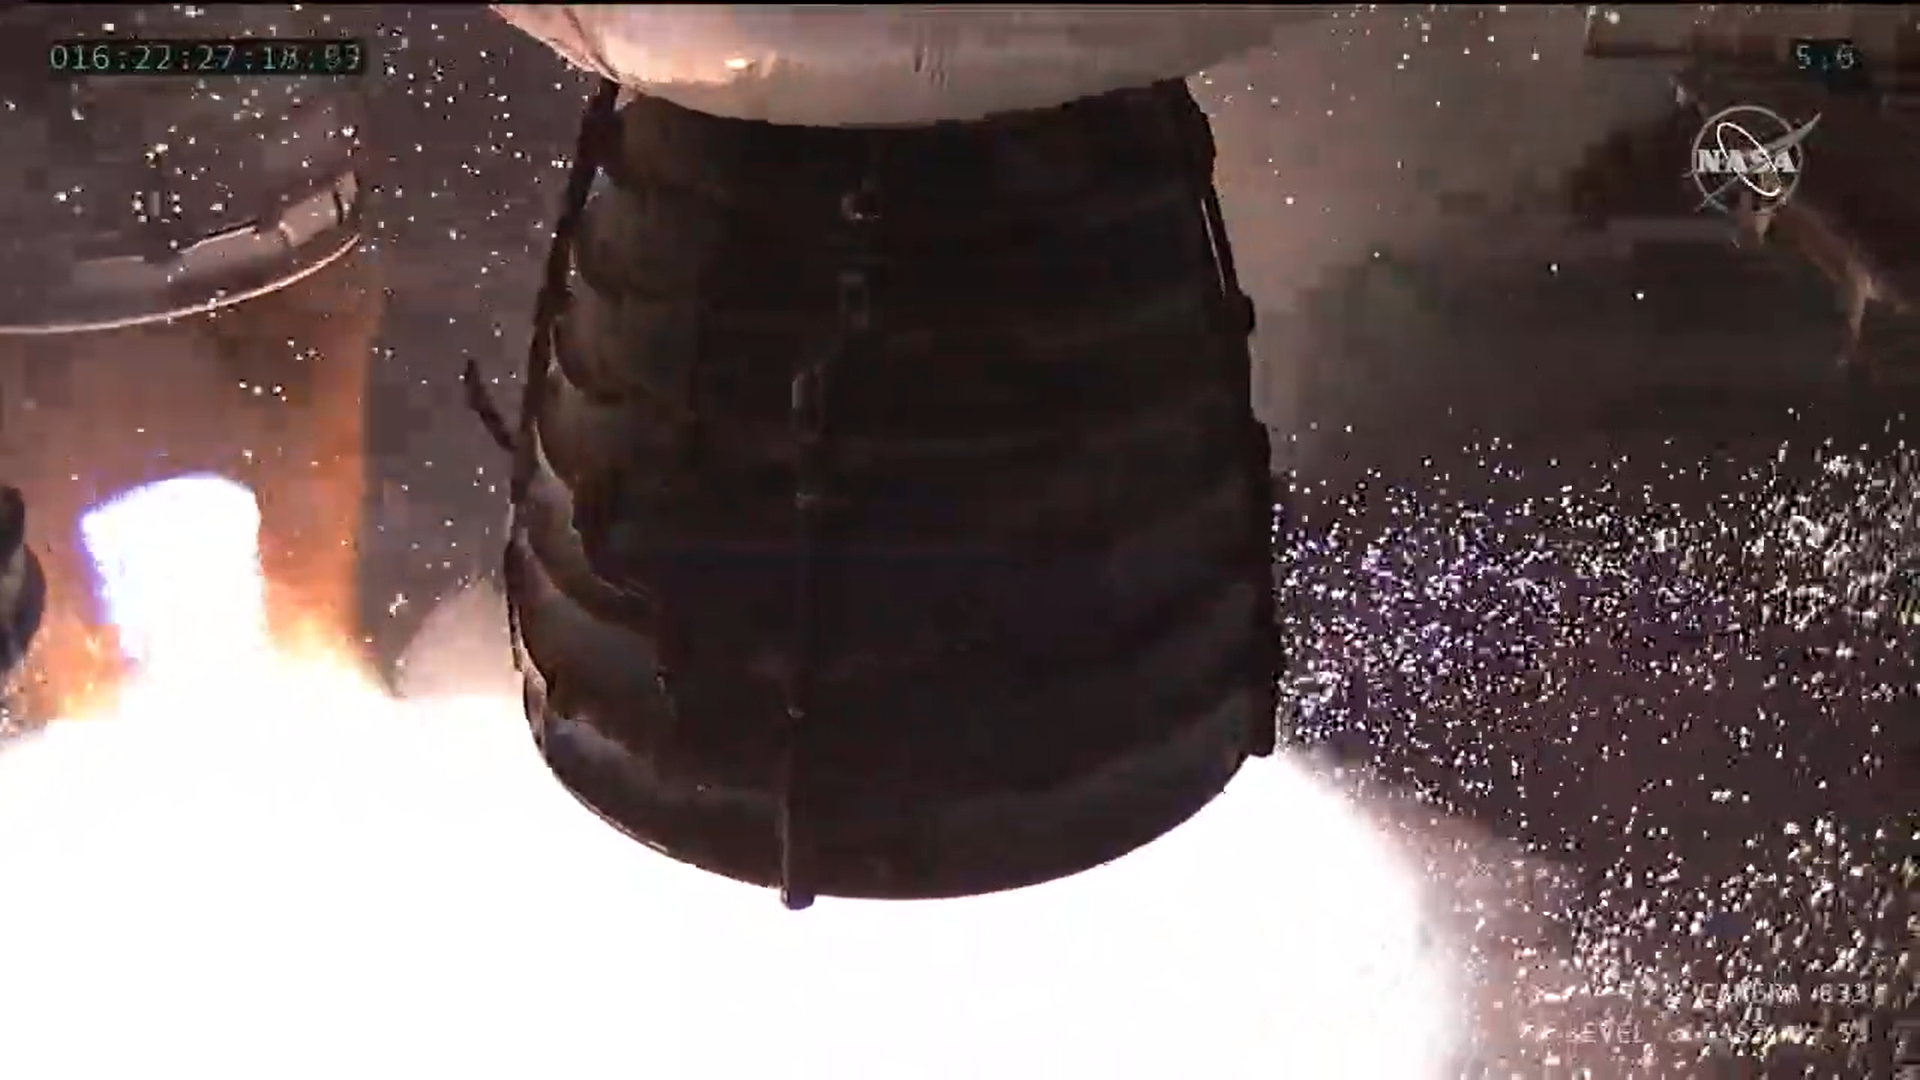 A close up of a rocket engine firing. 